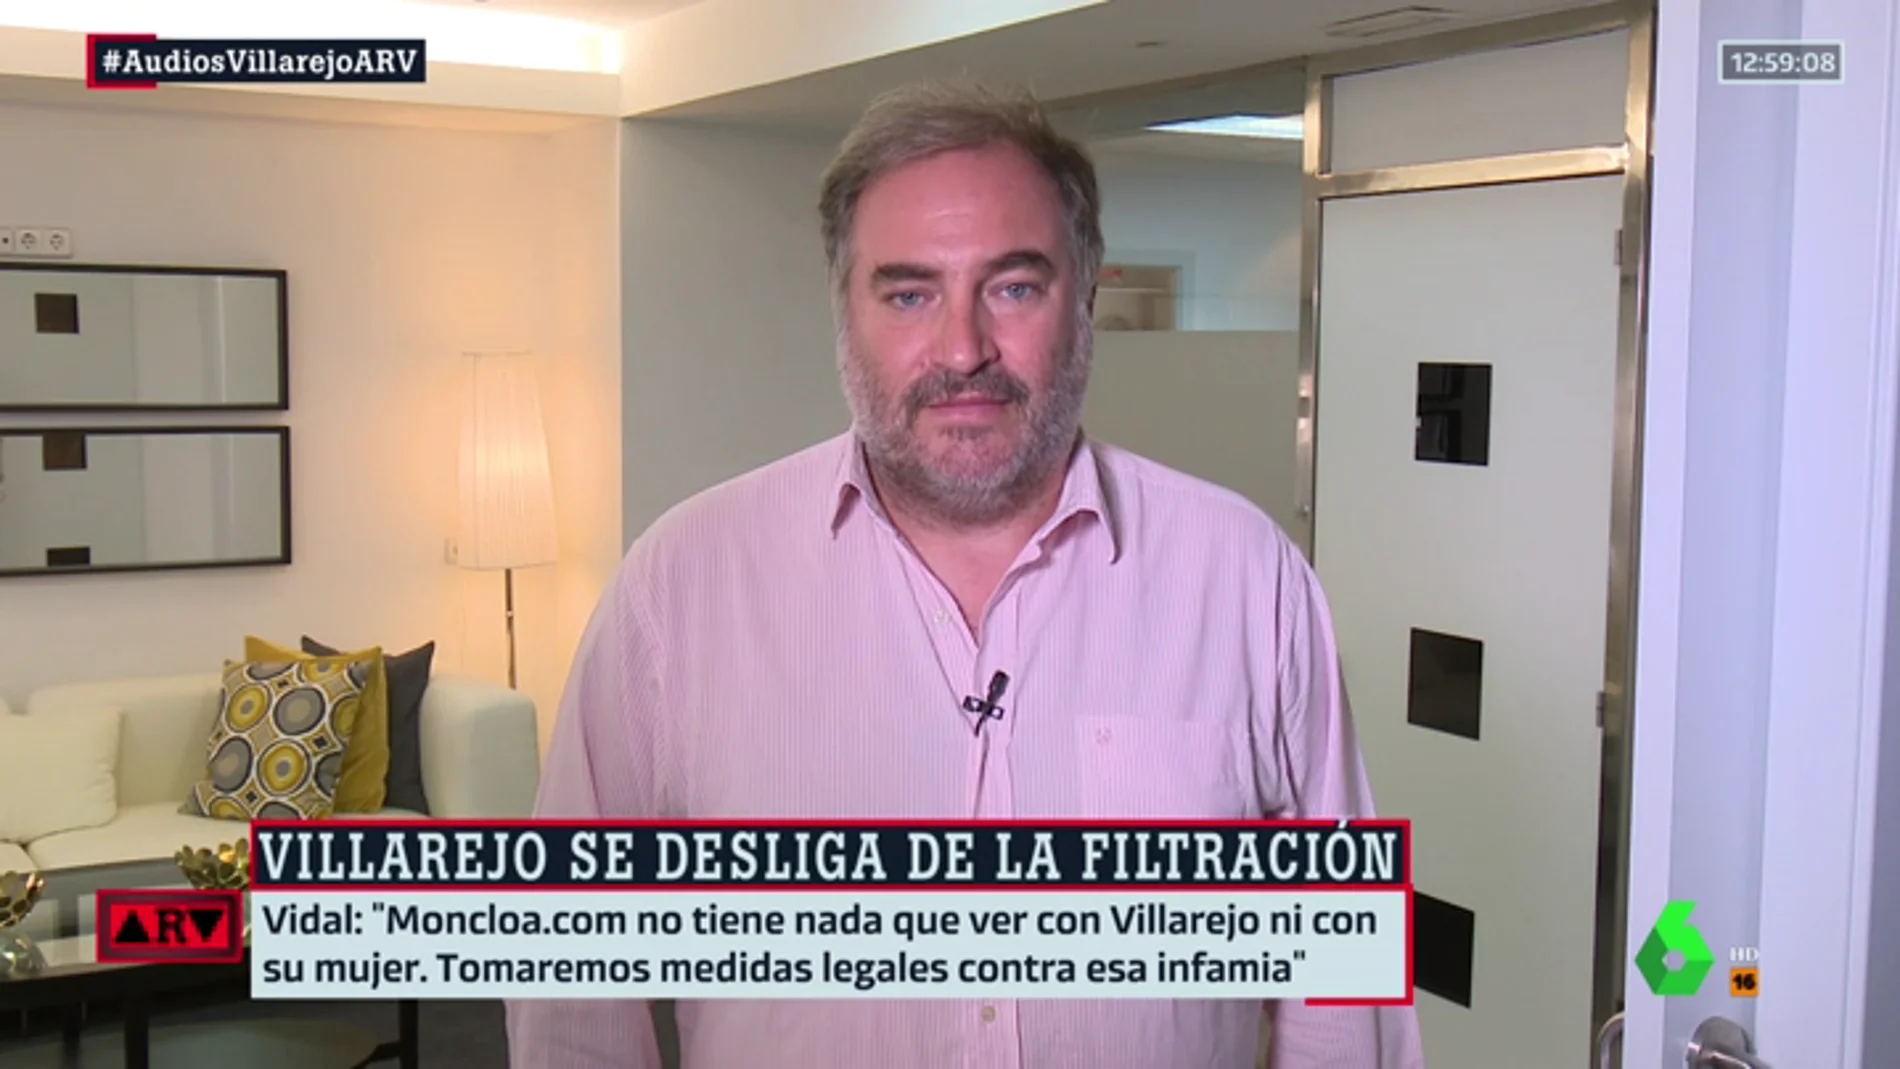 El director de Moncloa.com, Joaquín Vidal